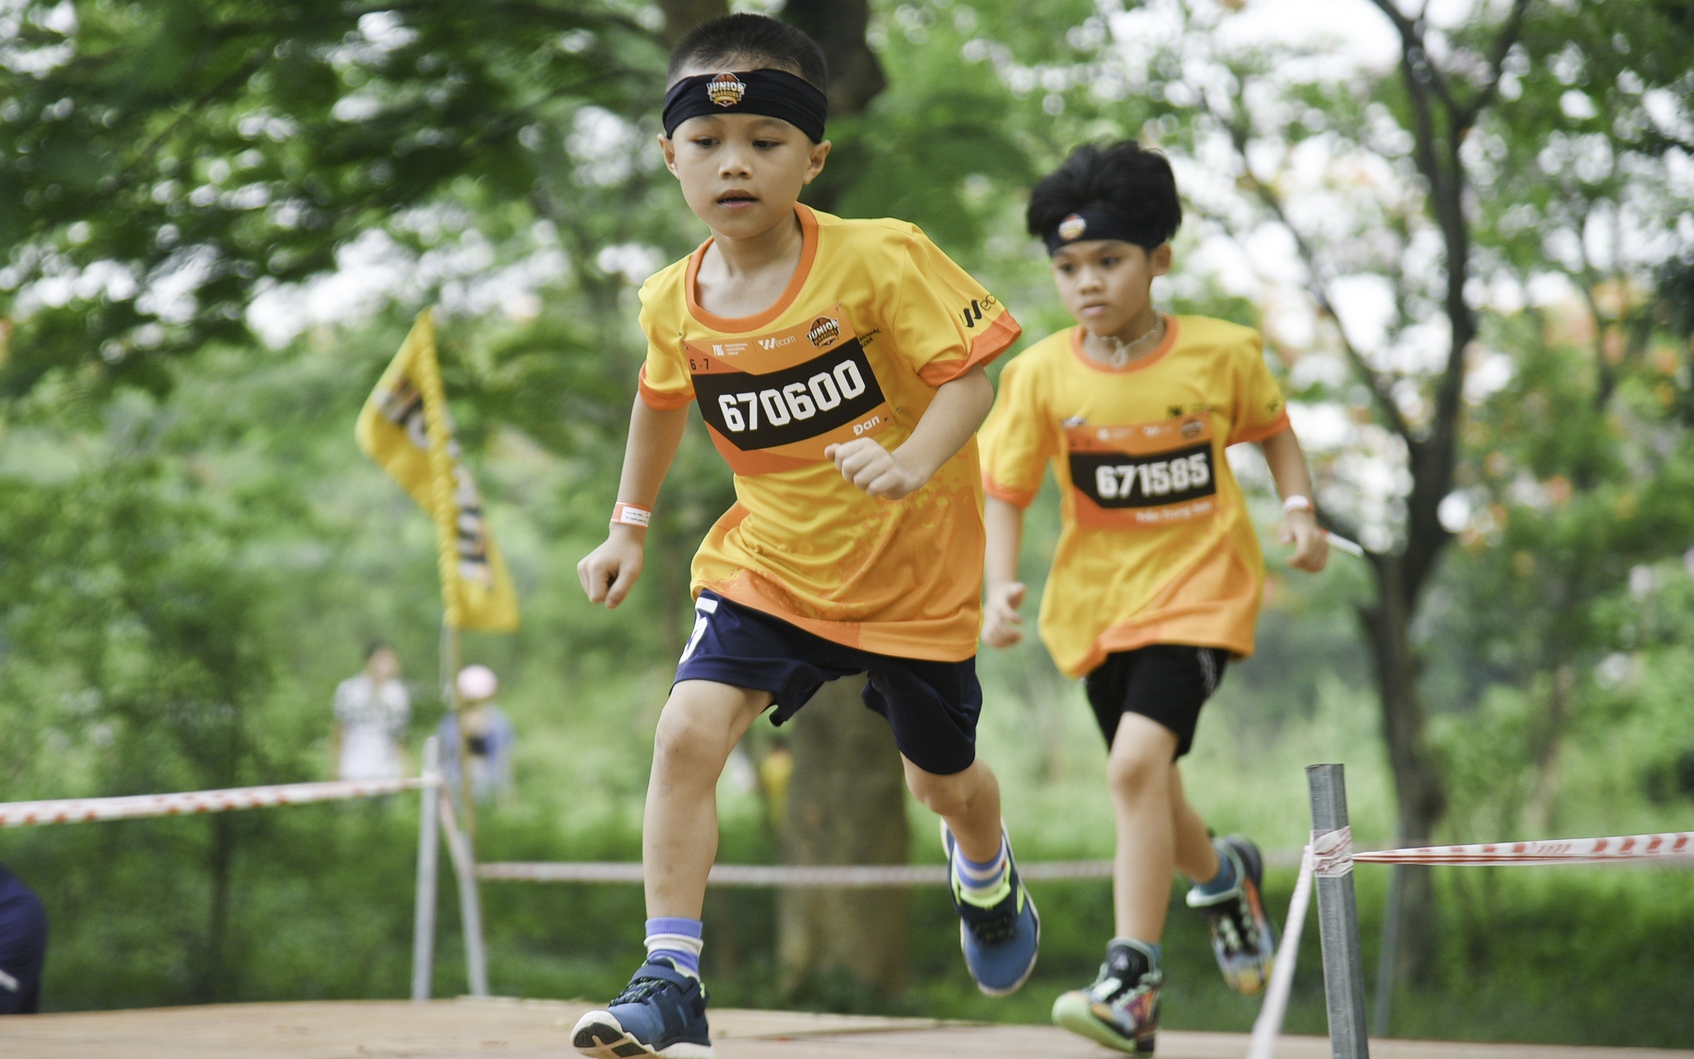 Hơn 1.500 chân chạy nhí tham gia giải đấu vượt chướng ngại vật tại Hà Nội